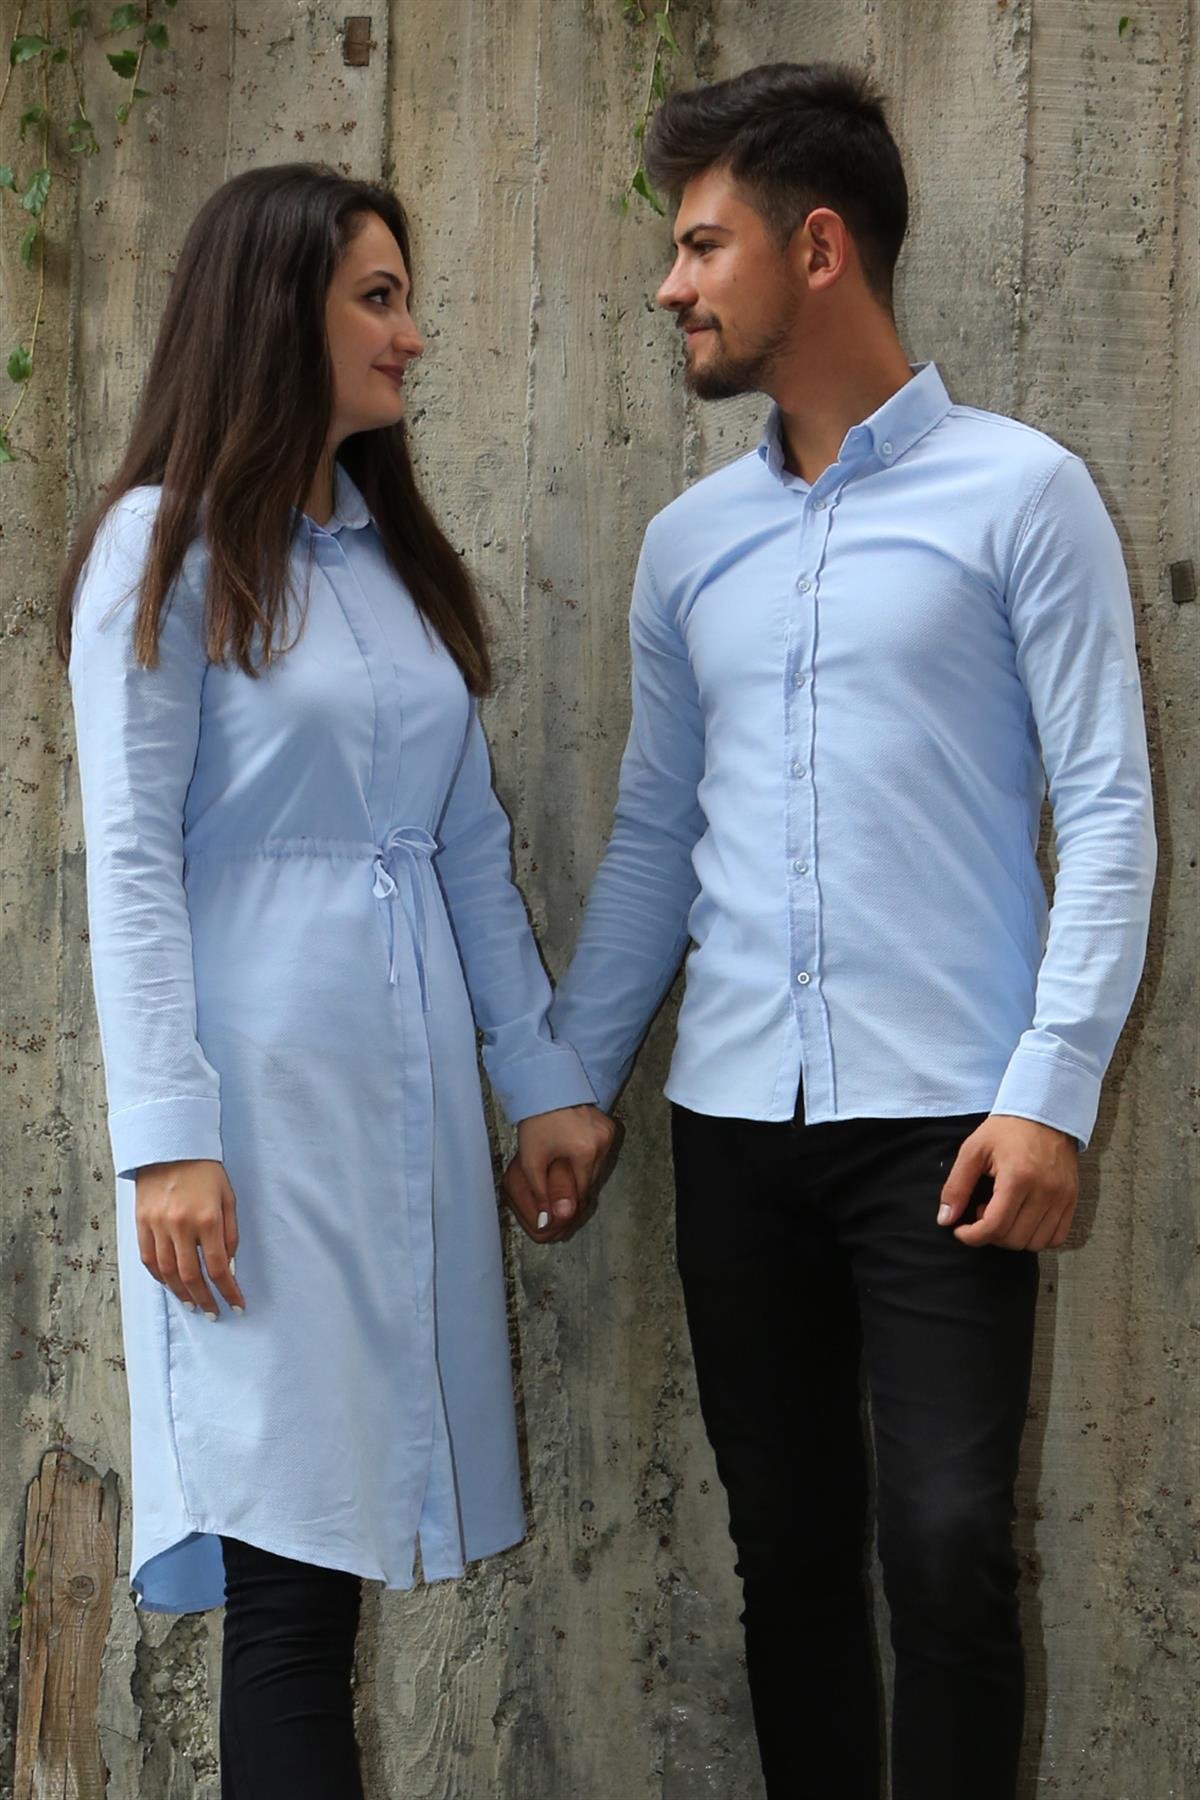 Armürlü Bengalin Düz Likralı Mavi Tesettür Gömlek Sevgili Kombini  giygit.com | Bay ve Bayan Giyim ve Sevgili Kombinleri